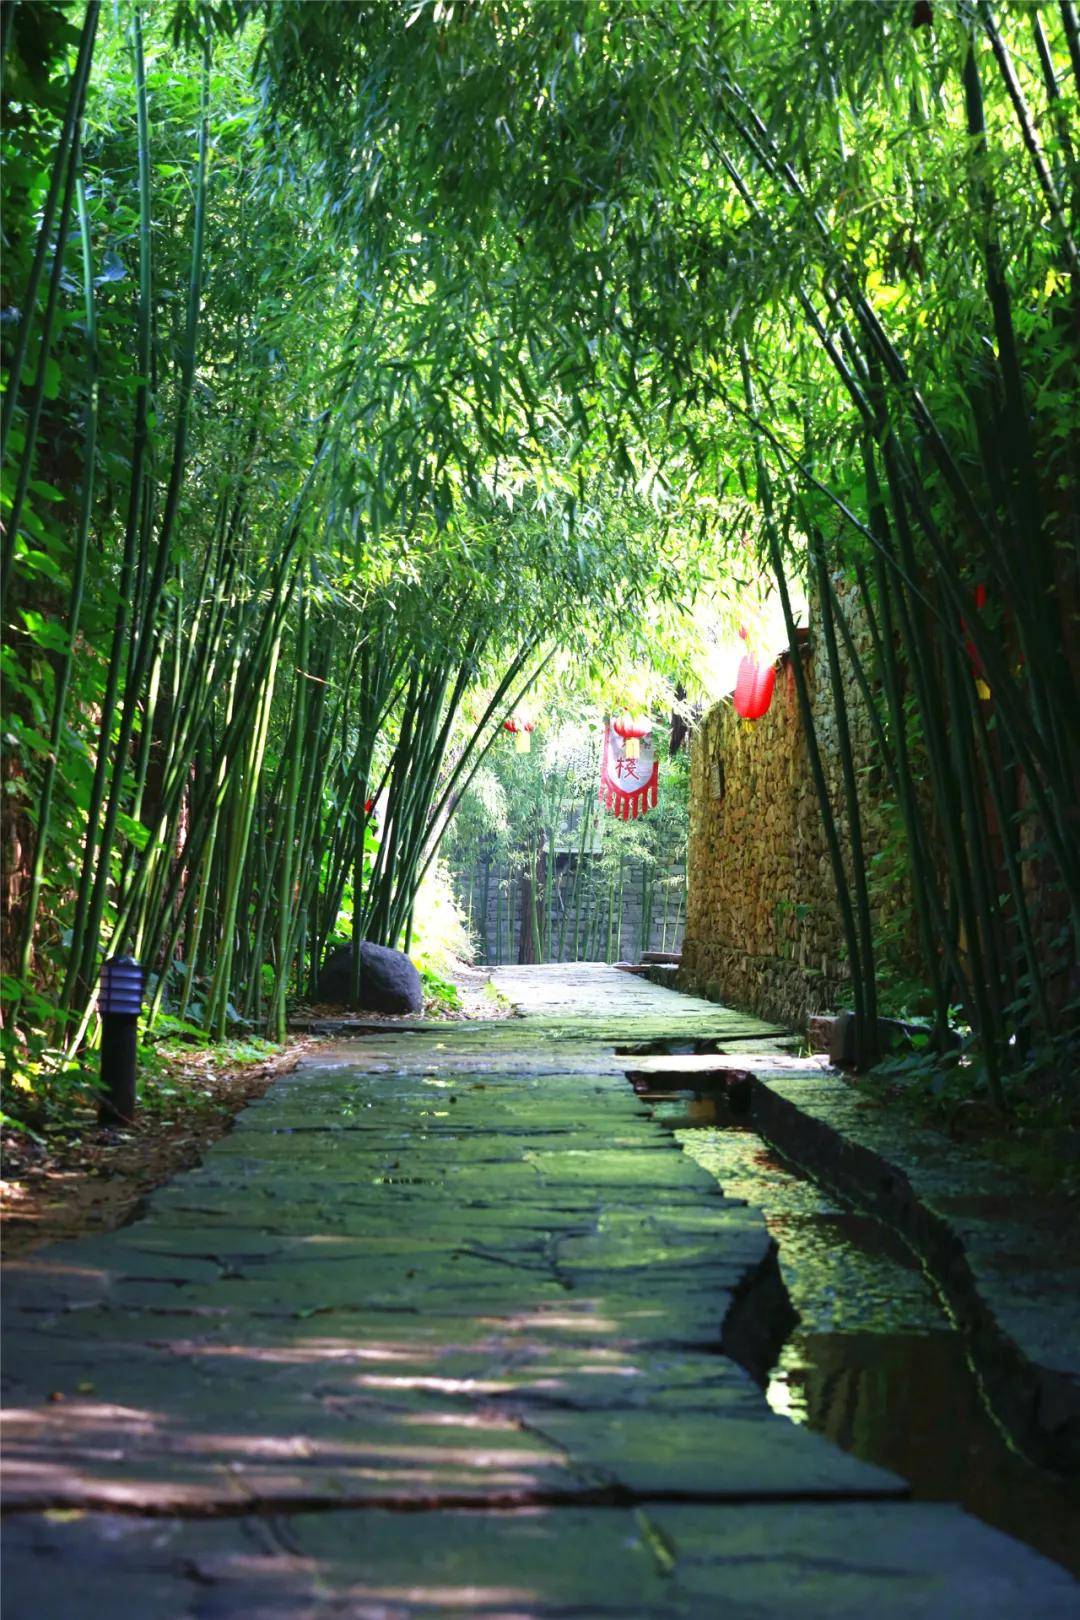 当夏雨倾泻而下,竹泉村的竹子焕发出被洗刷般的翠绿.